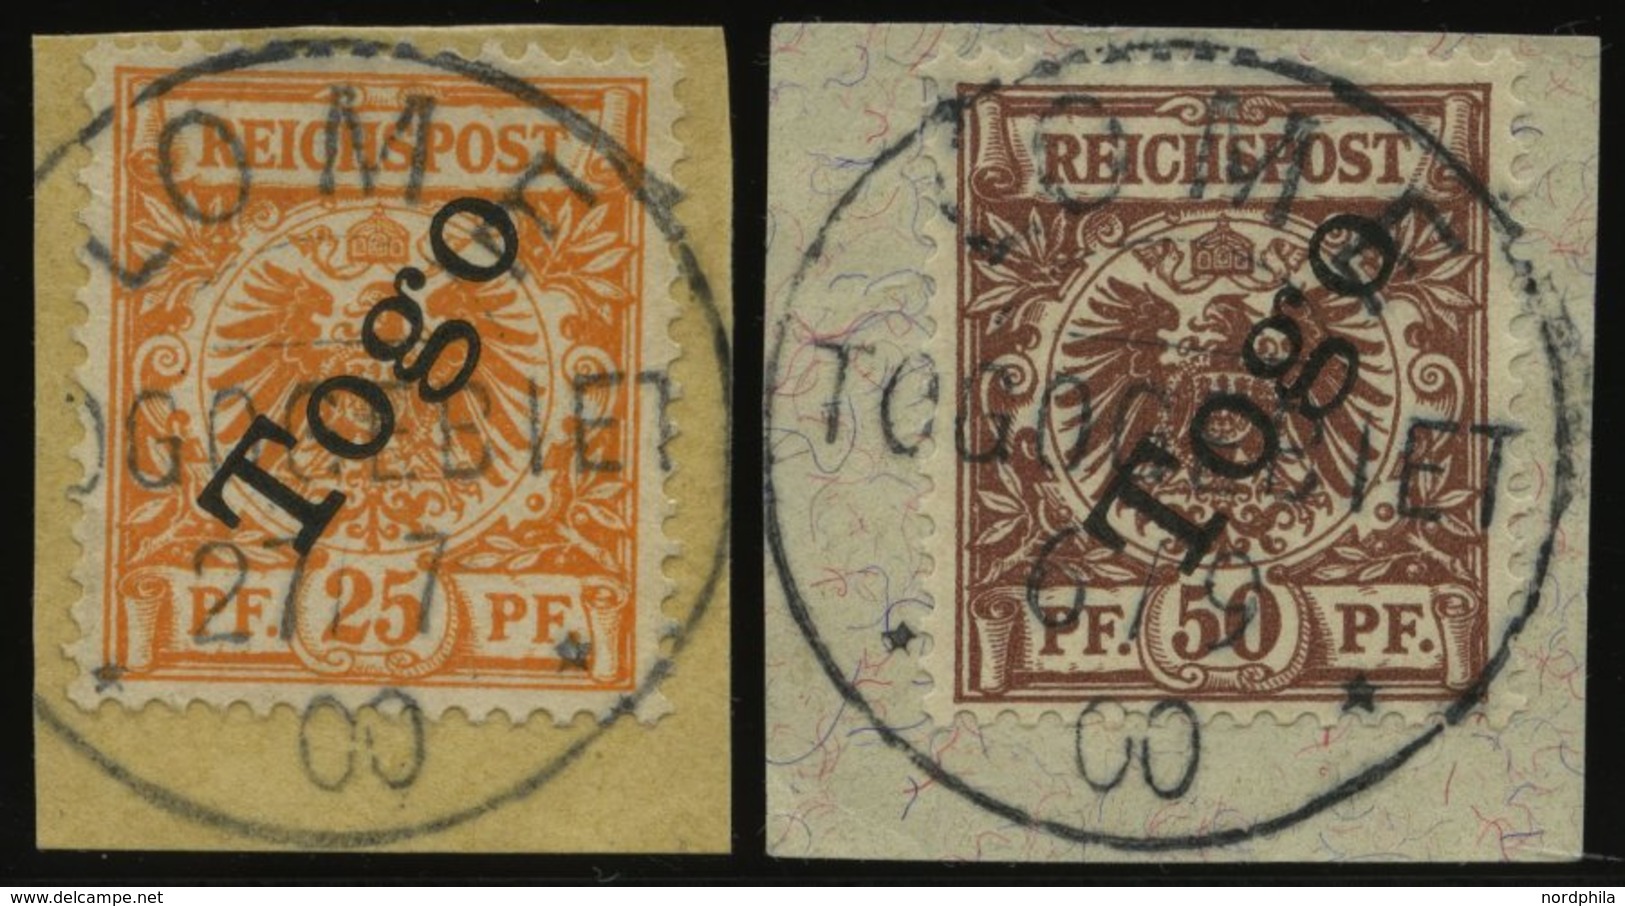 TOGO 5a,6 BrfStk, 1900, 25 Pf. Gelblichorange Und 50 Pf. Lebhaftrötlichbraun, 2 Prachtbriefstücke, Mi. (140.-) - Togo